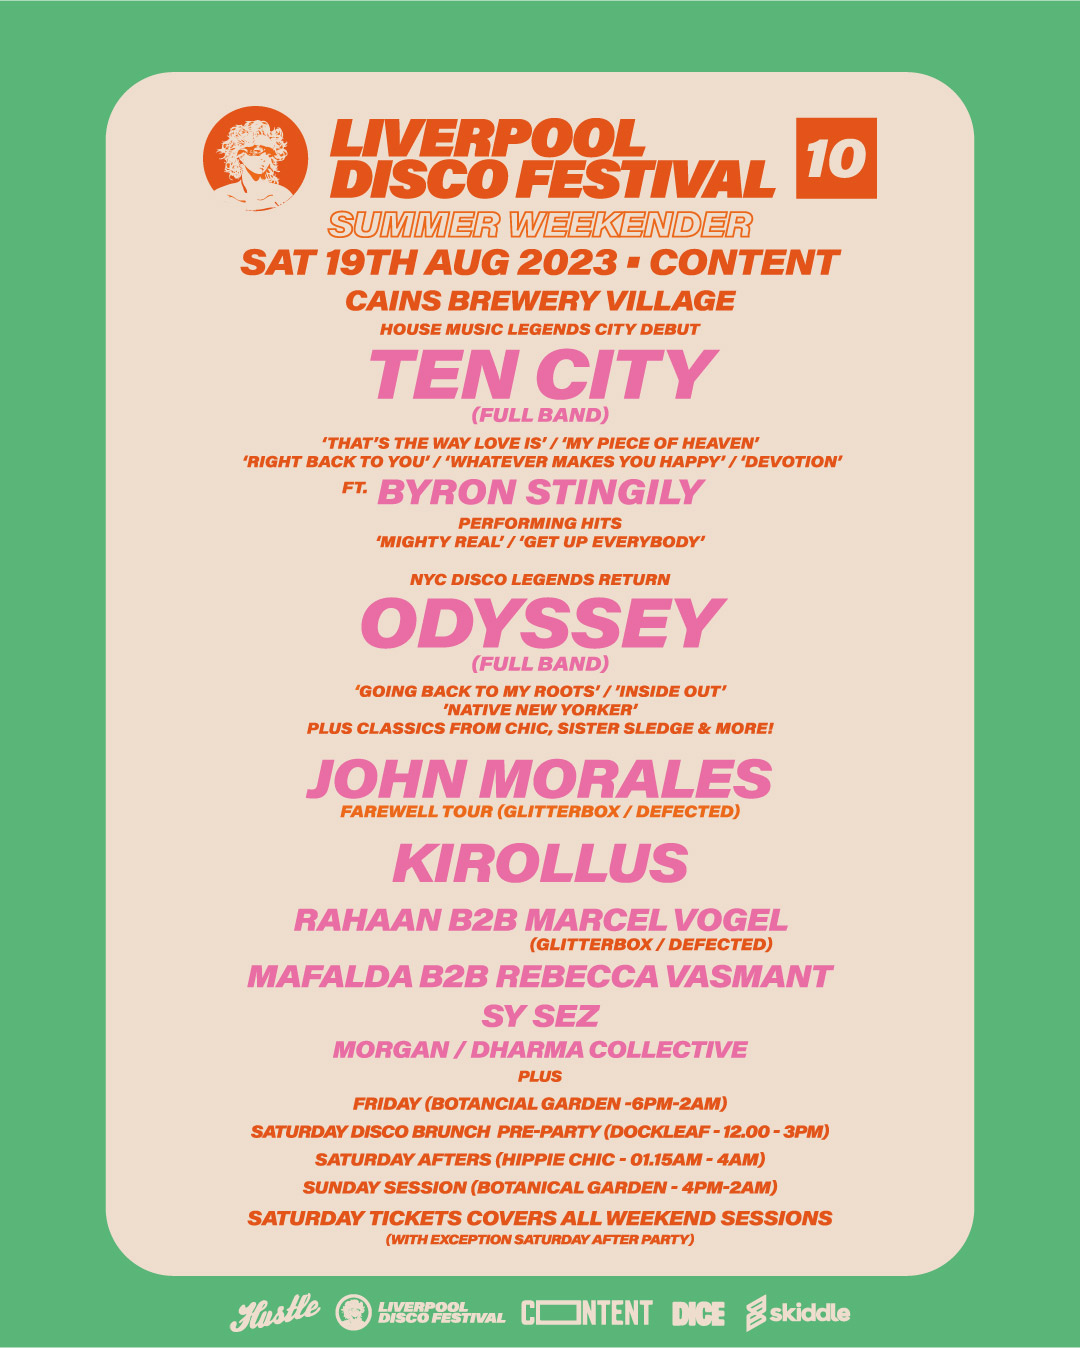 Liverpool Disco Festival’s 10th edition